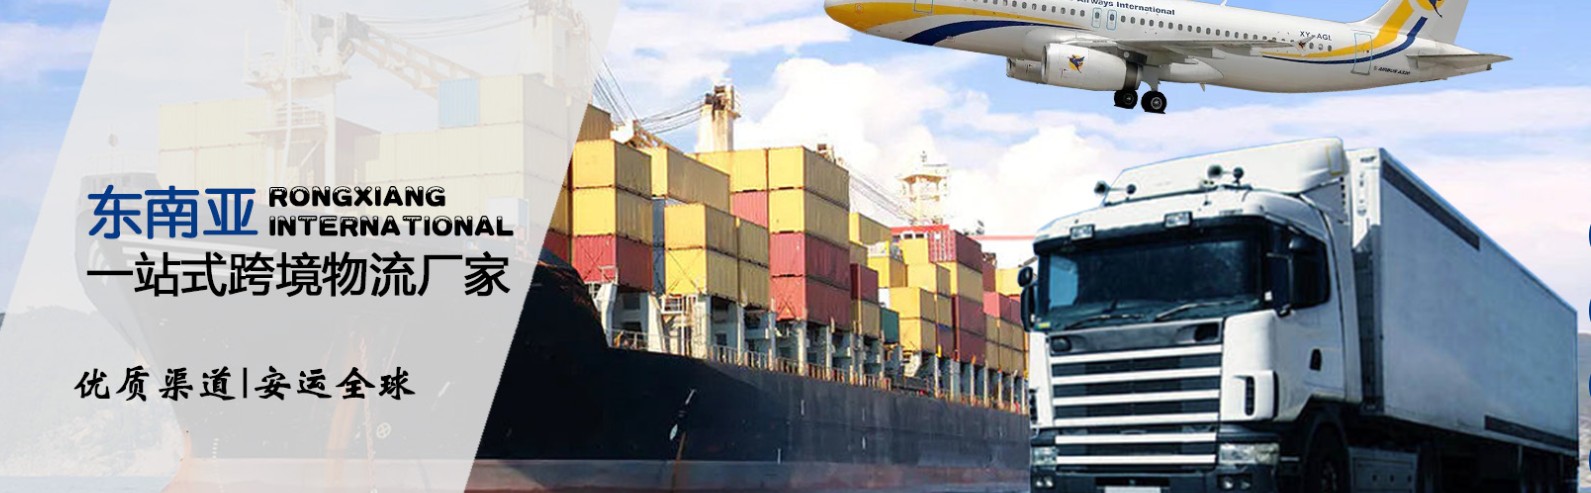 新加坡货货运代理 新加坡国际物流公司  新加坡进出口报关公司 新加坡国际货运代理有限公司